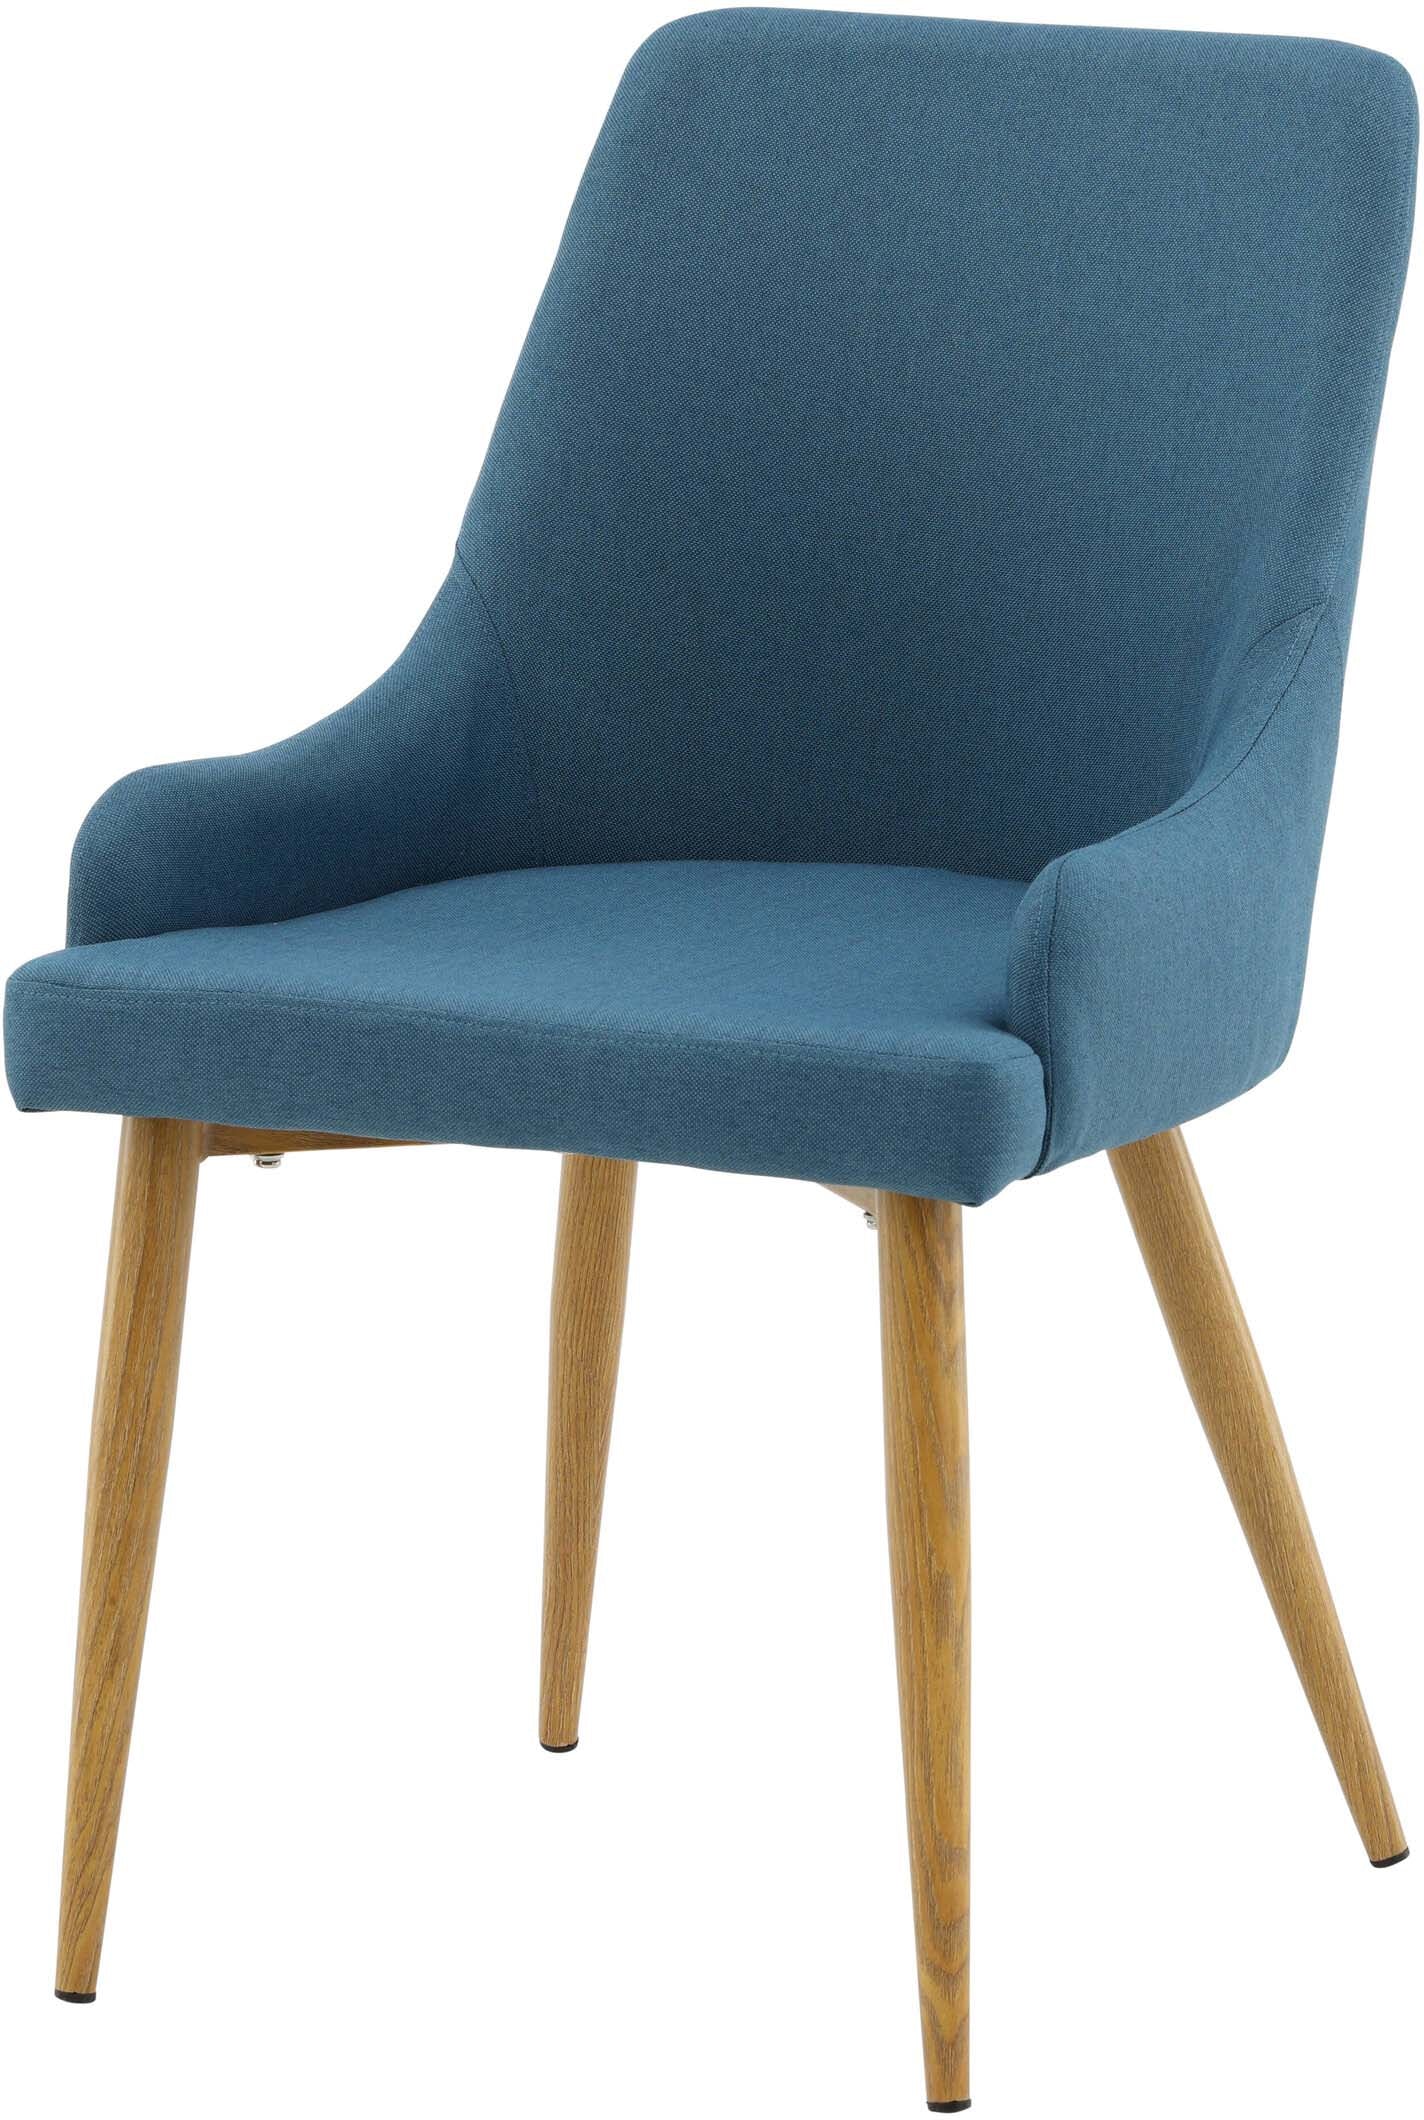 Plaza Stuhl in Blau / Natur präsentiert im Onlineshop von KAQTU Design AG. Stuhl ist von Venture Home